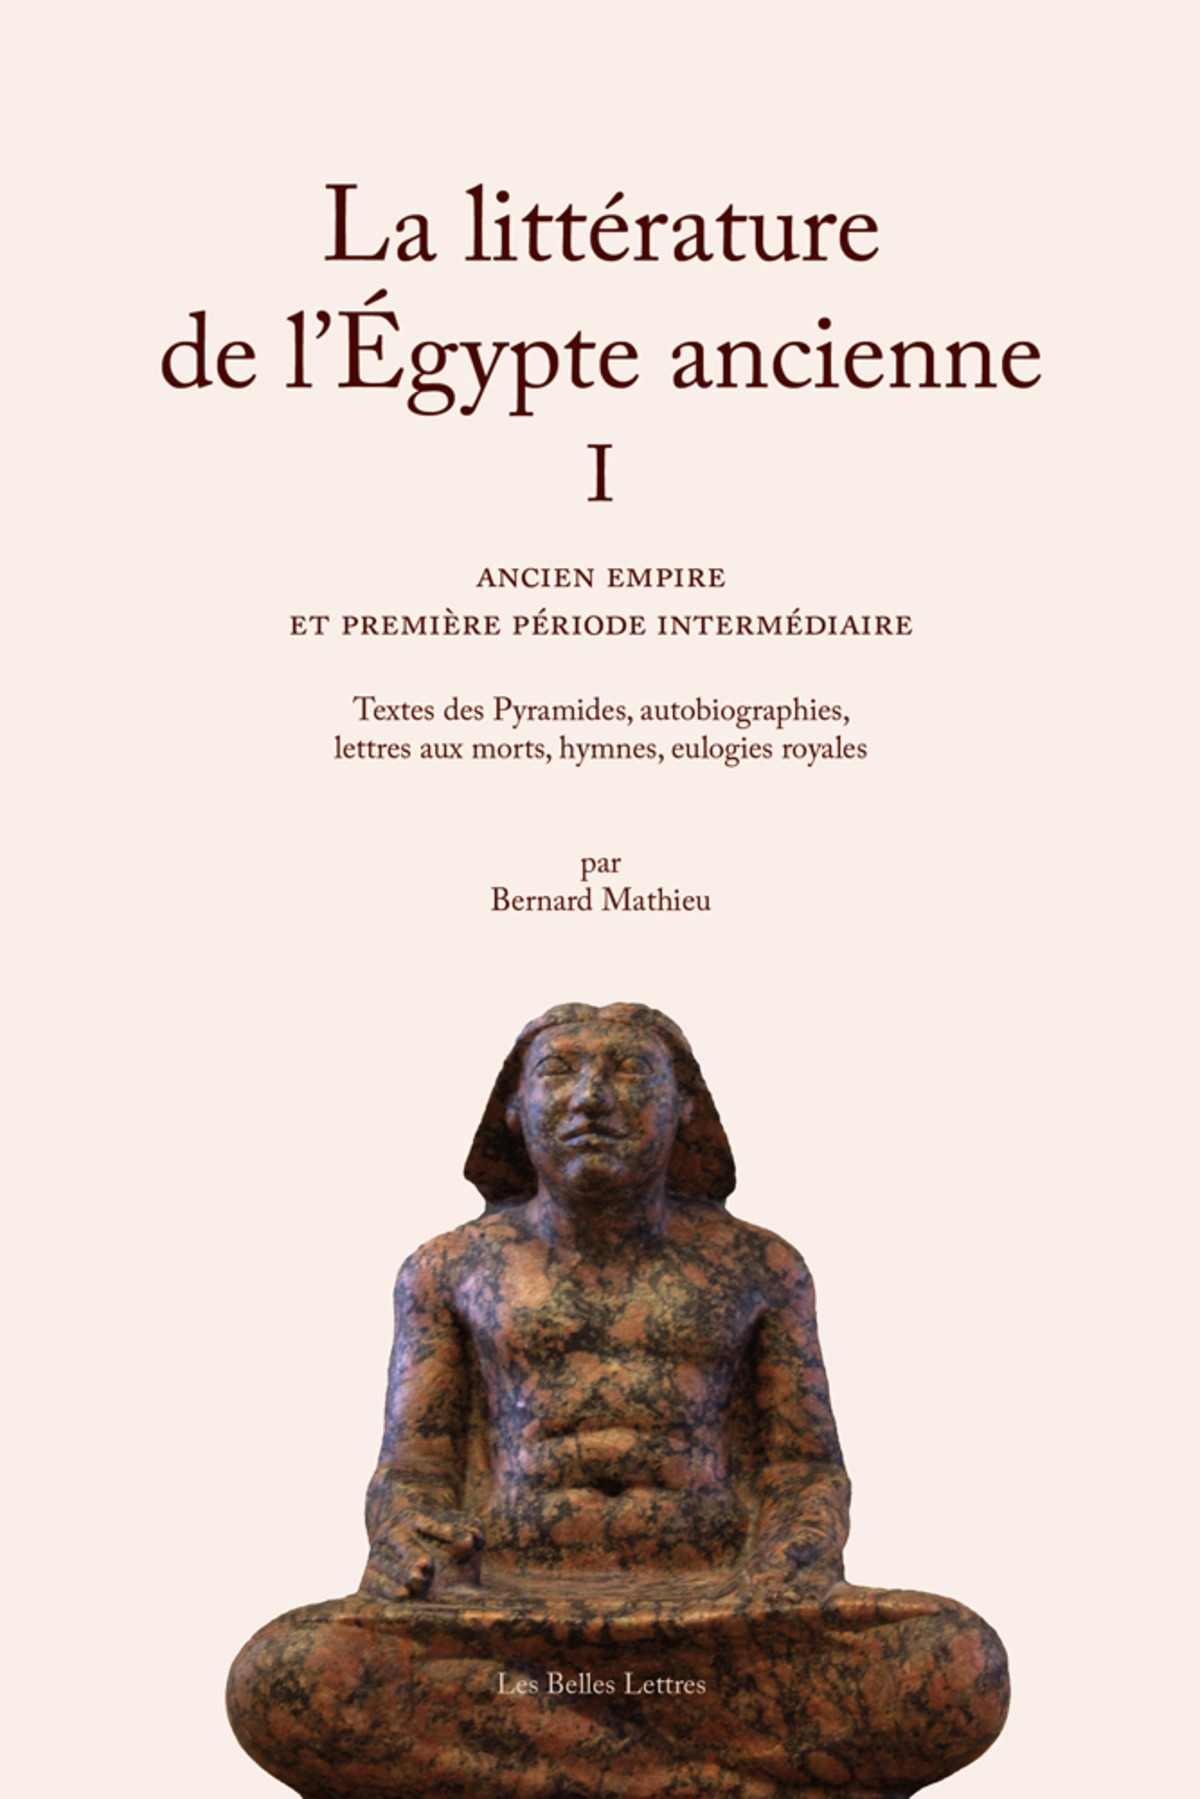 La Littérature de l’Égypte ancienne. Volume I